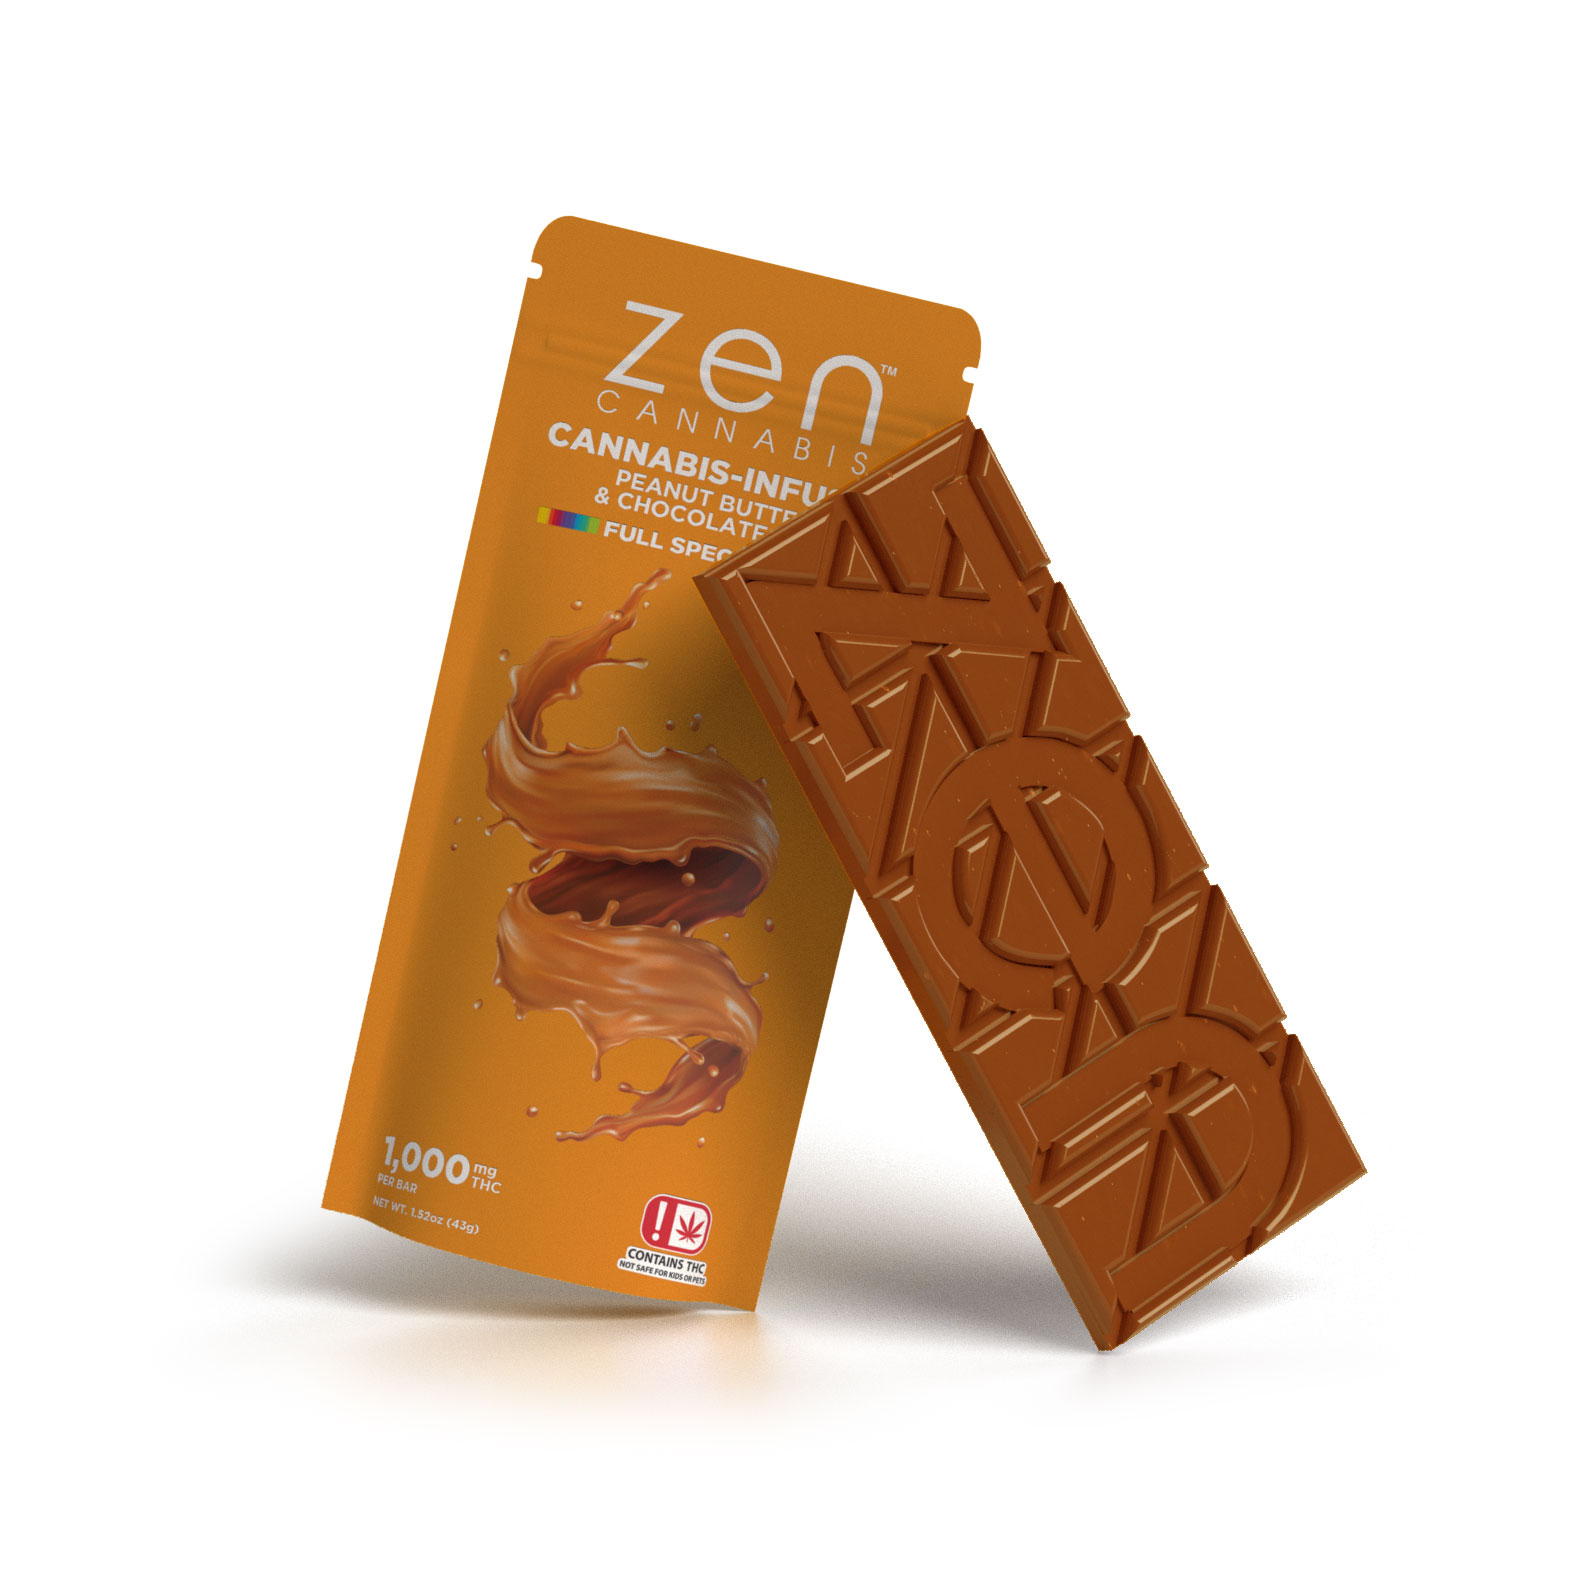 Zen cannabis peanut butter chocolate bar